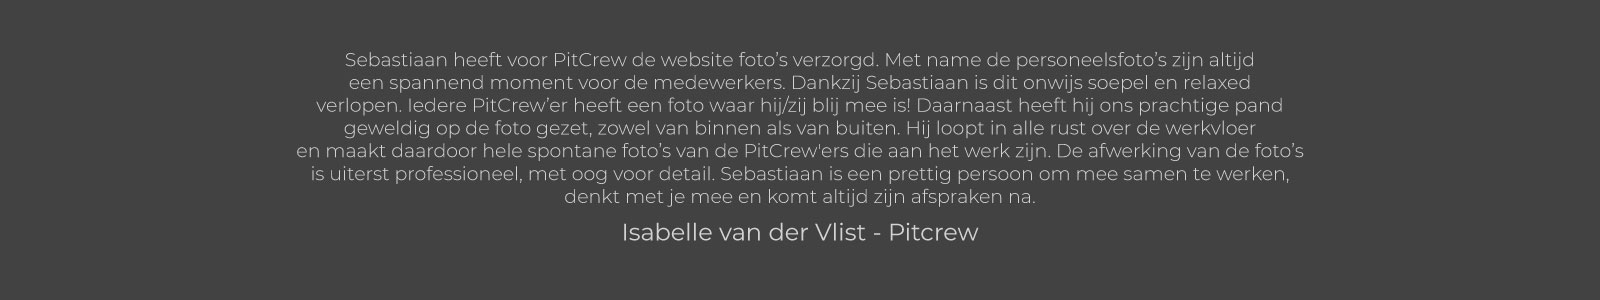 Isabelle van der Vlist - Pitcrew